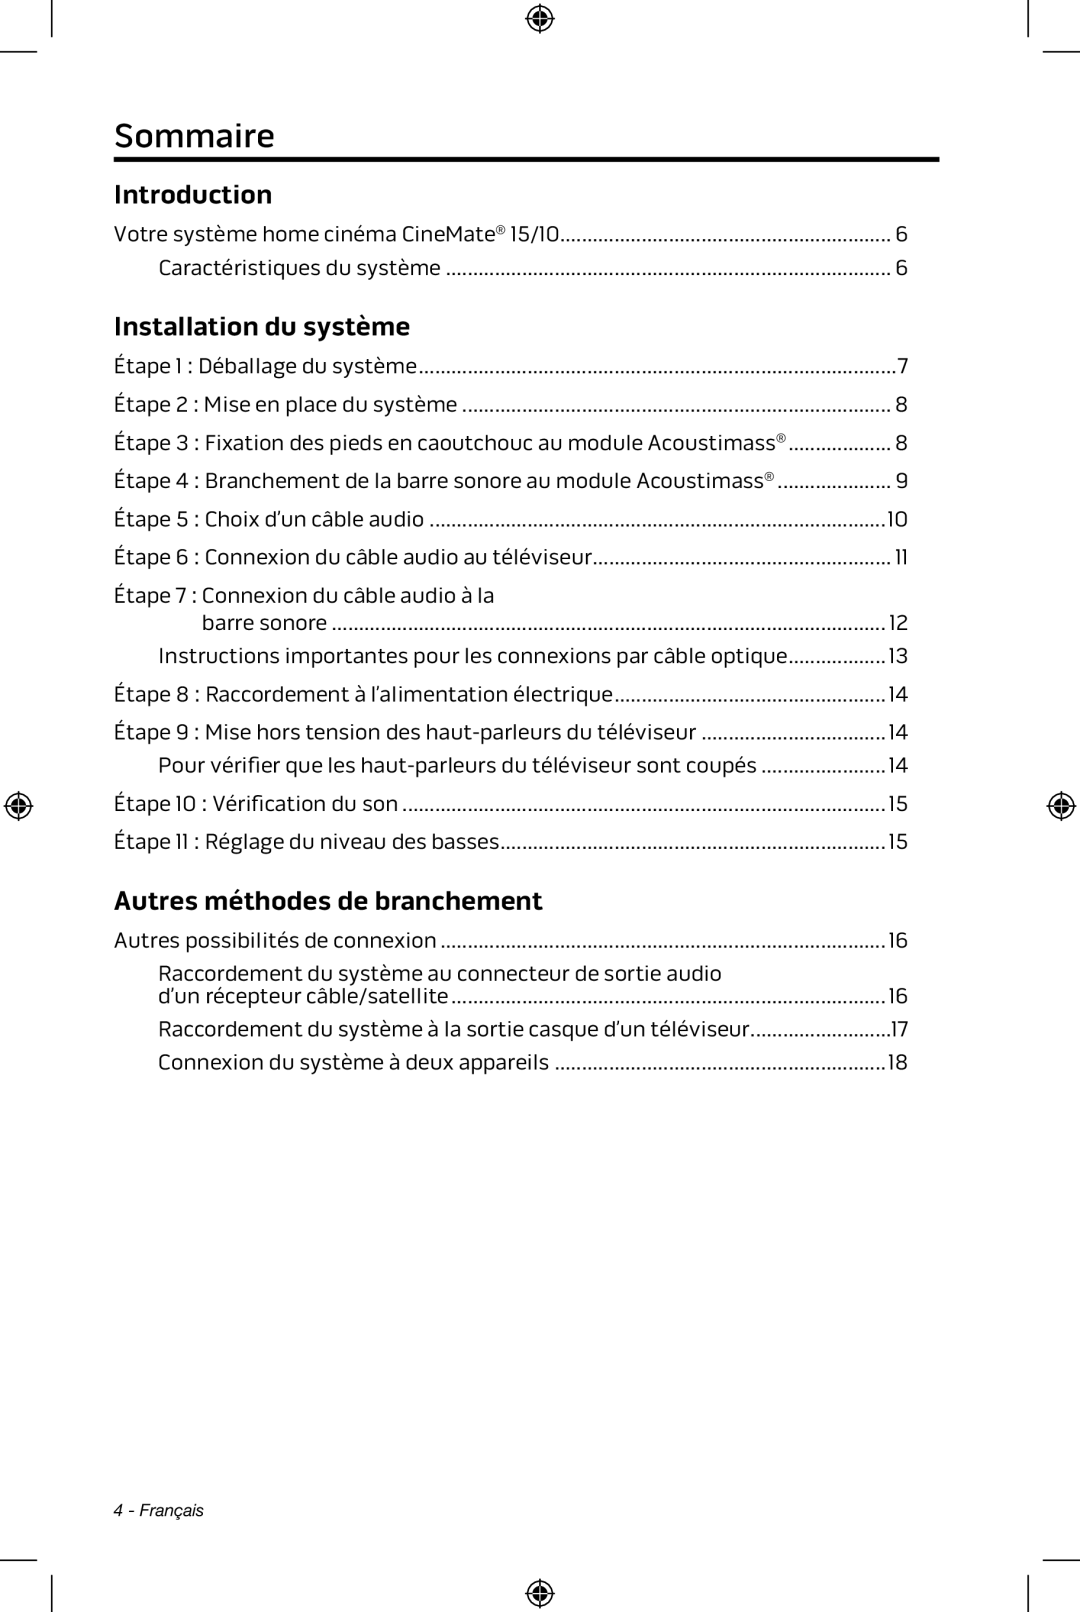 Bose CineMate 15/10 manual Sommaire, Introduction, Installation du système, Autres méthodes de branchement 